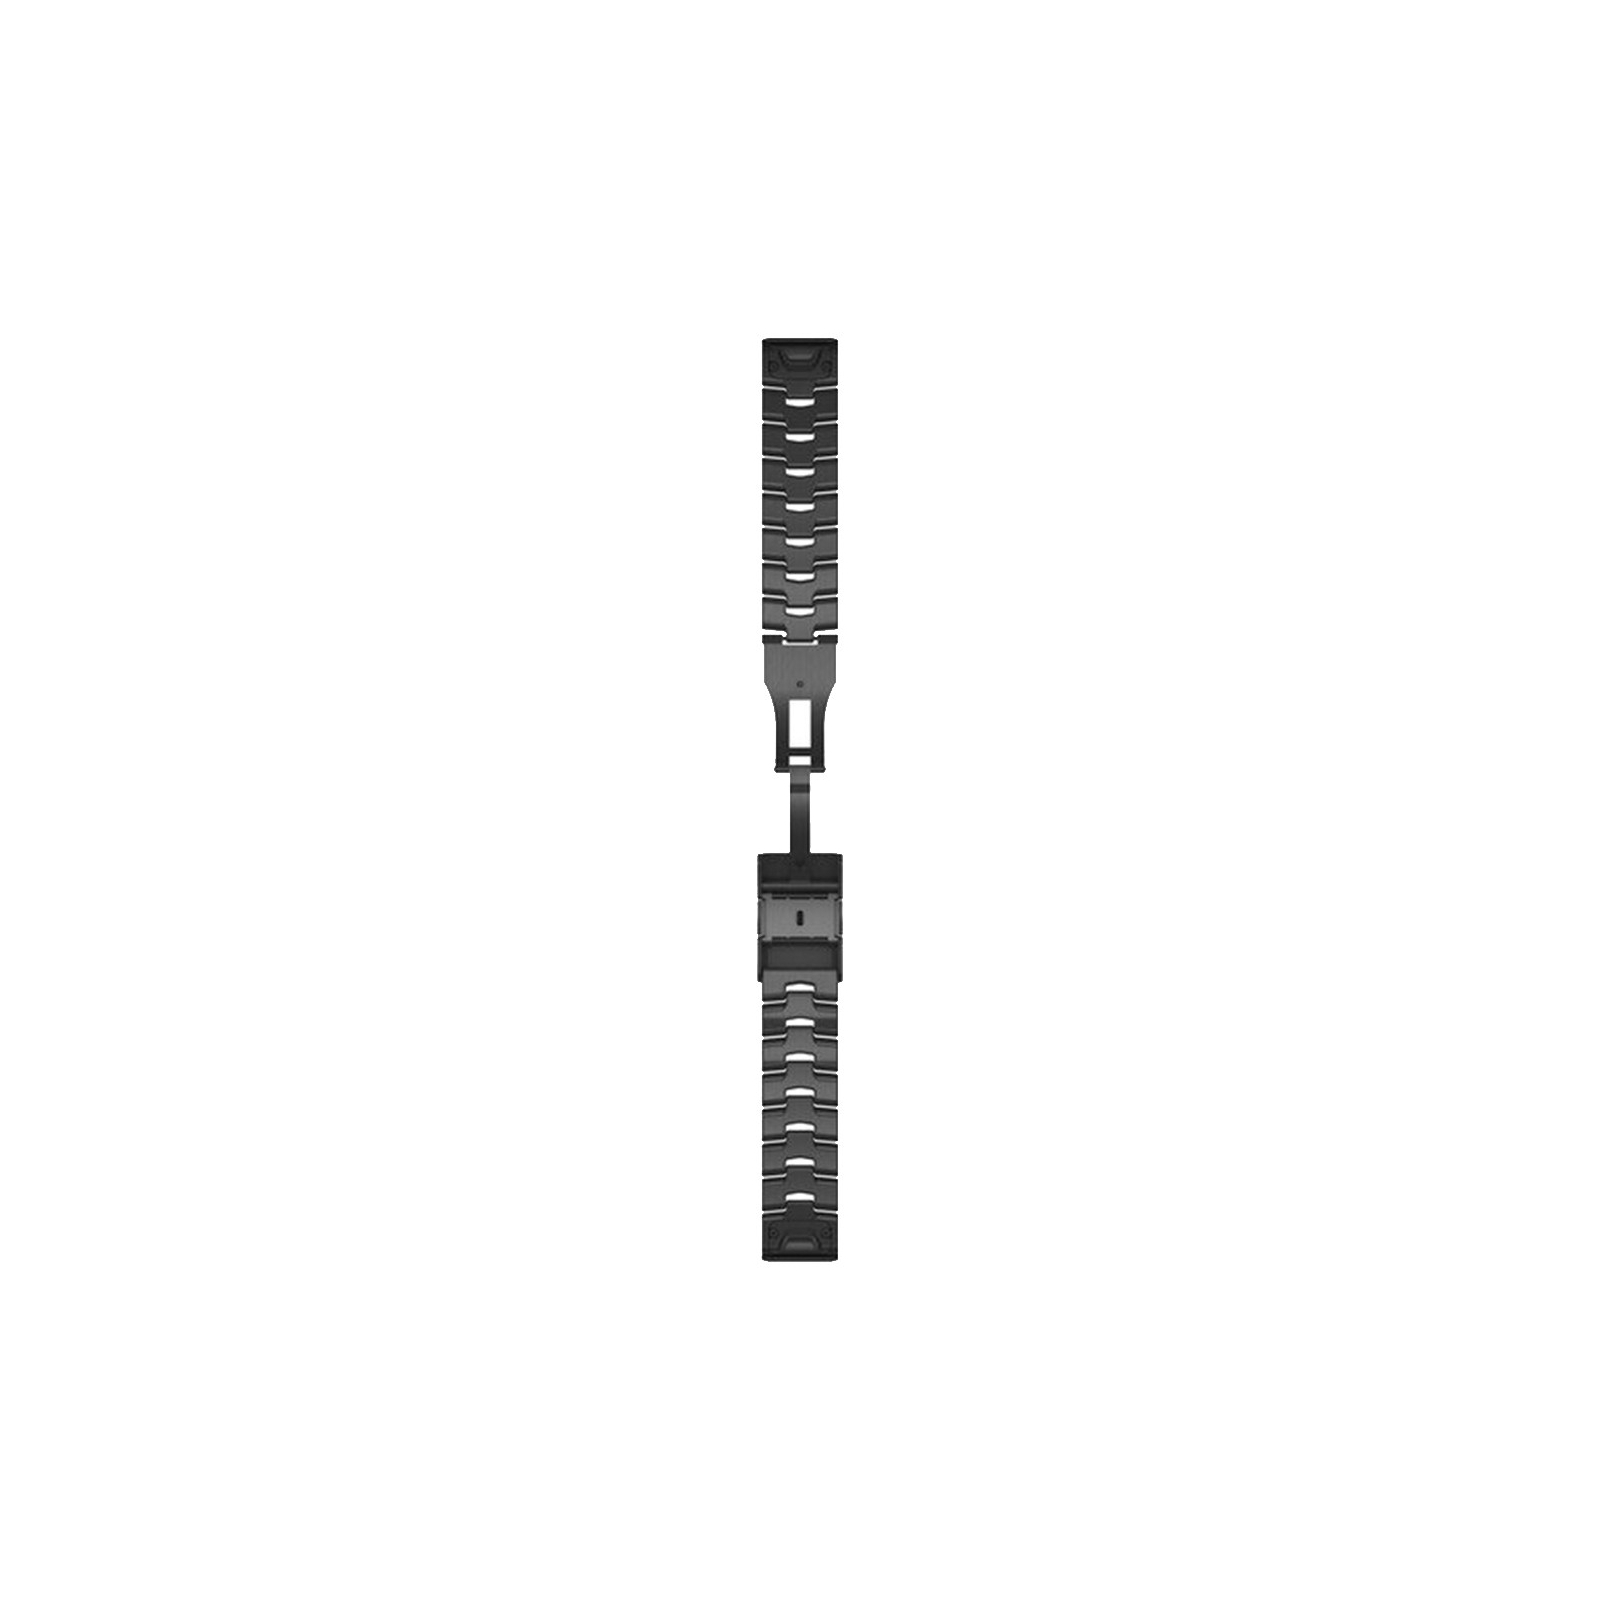 Ремешок для смарт-часов Garmin fenix 6 22mm QuickFit Carbon Gray DLC Titanium (010-12863-09) изображение 2